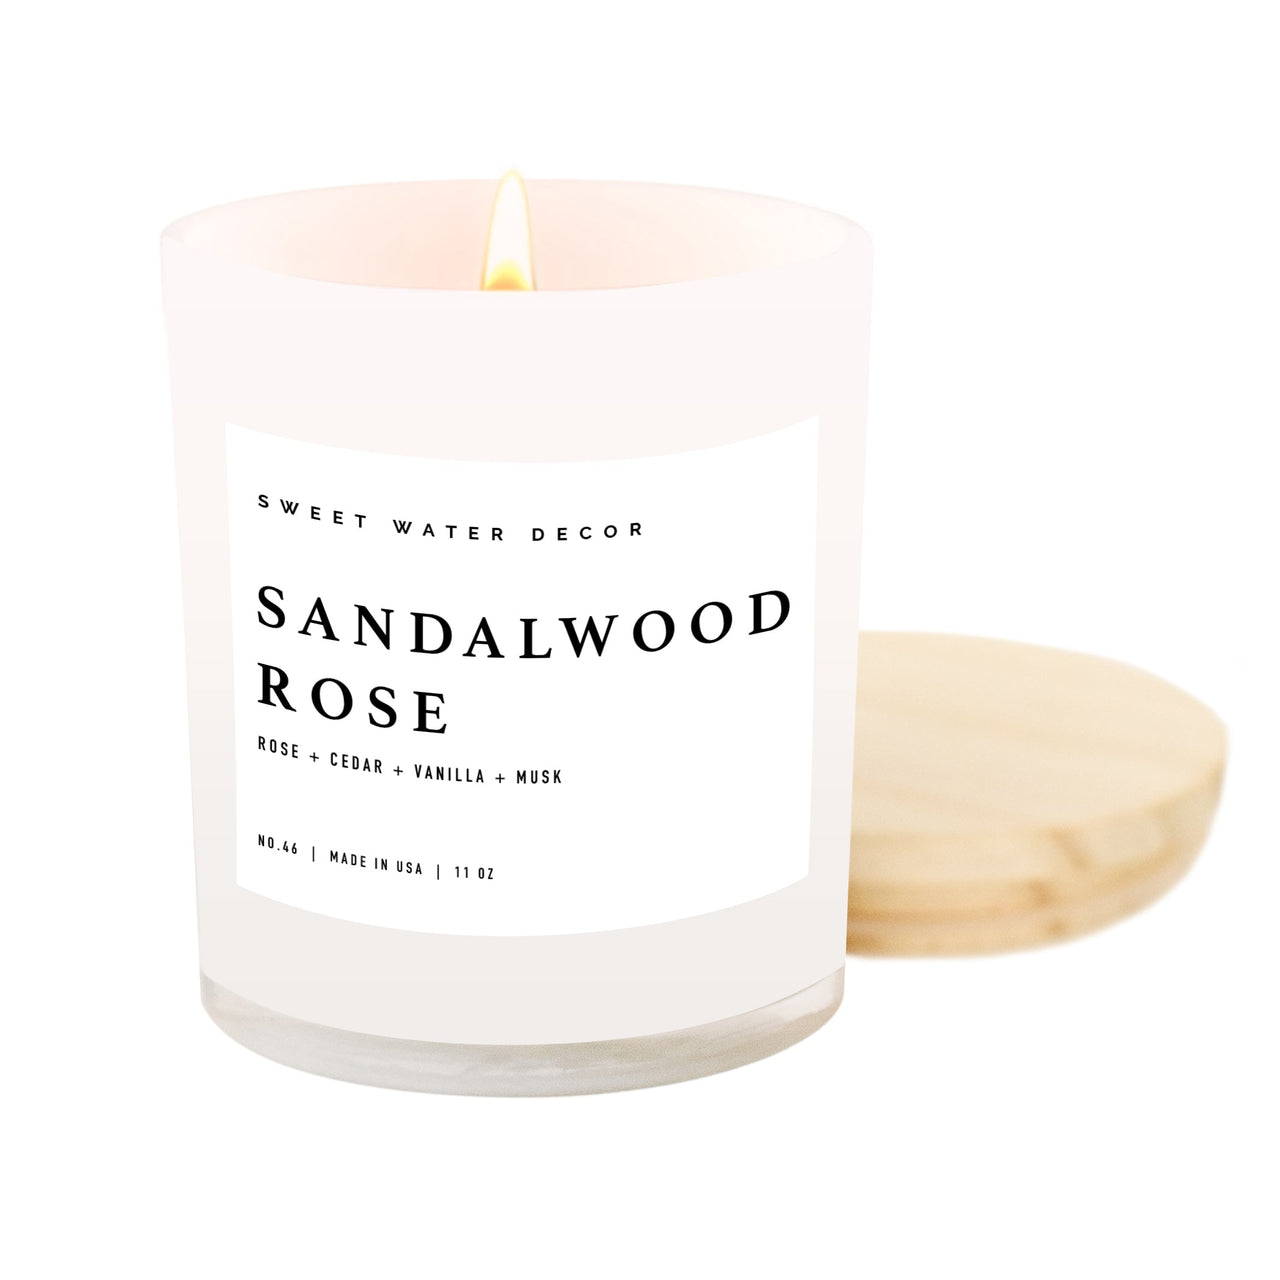 Sandalwood Rose Soy Candle - White Jar - 11 oz - Tony's Home Furnishings